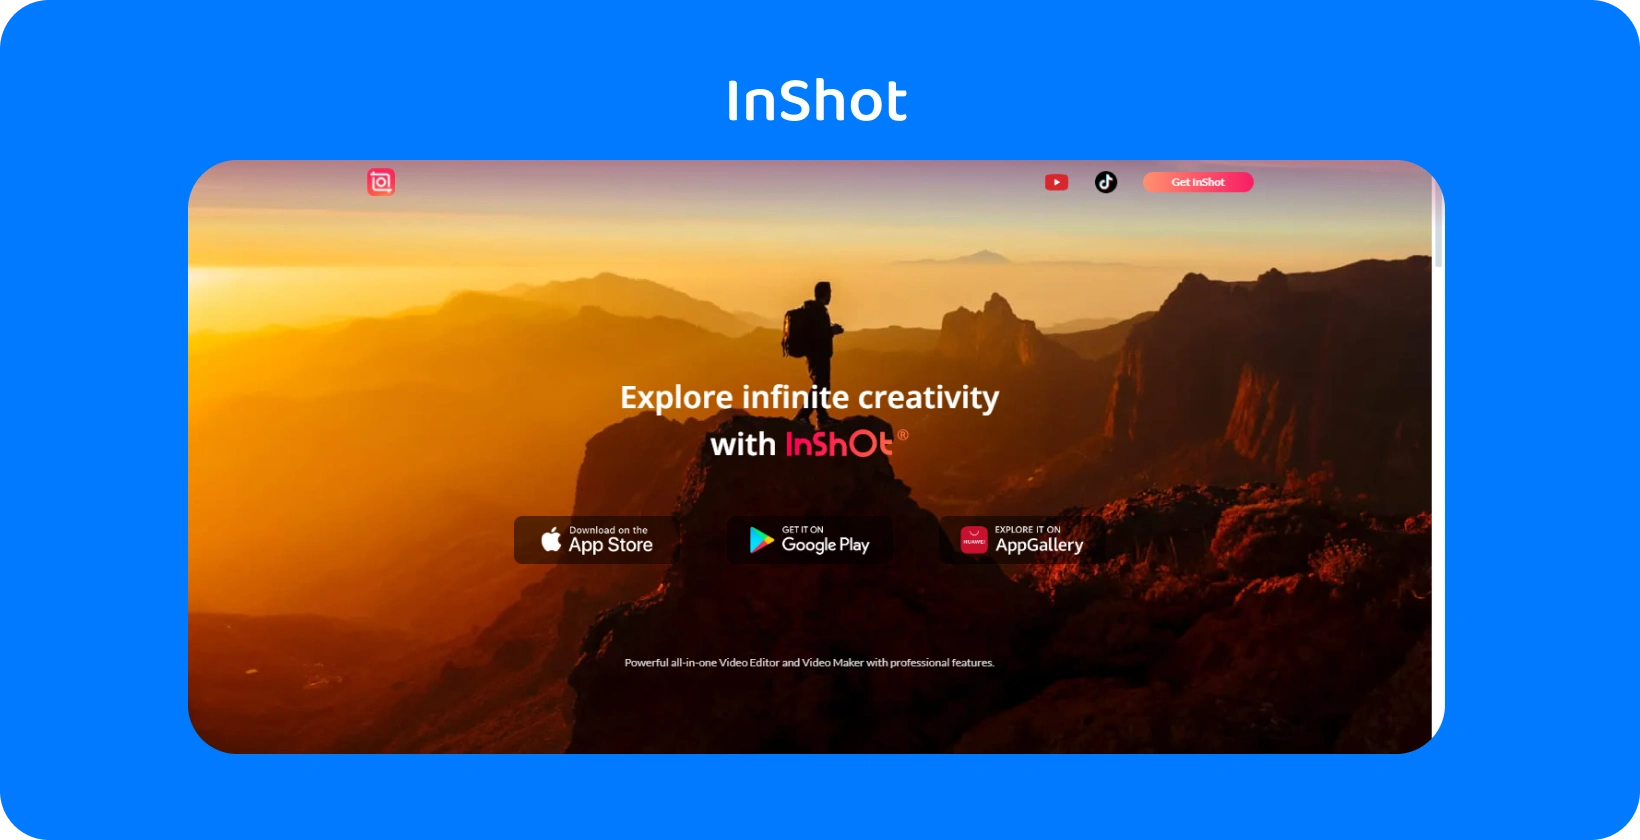 InShot oglas aplikacije s pohodnikom ob sončnem zahodu, ki simbolizira obljubo aplikacije, da bo raziskala neskončno ustvarjalnost pri urejanju videoposnetkov.
